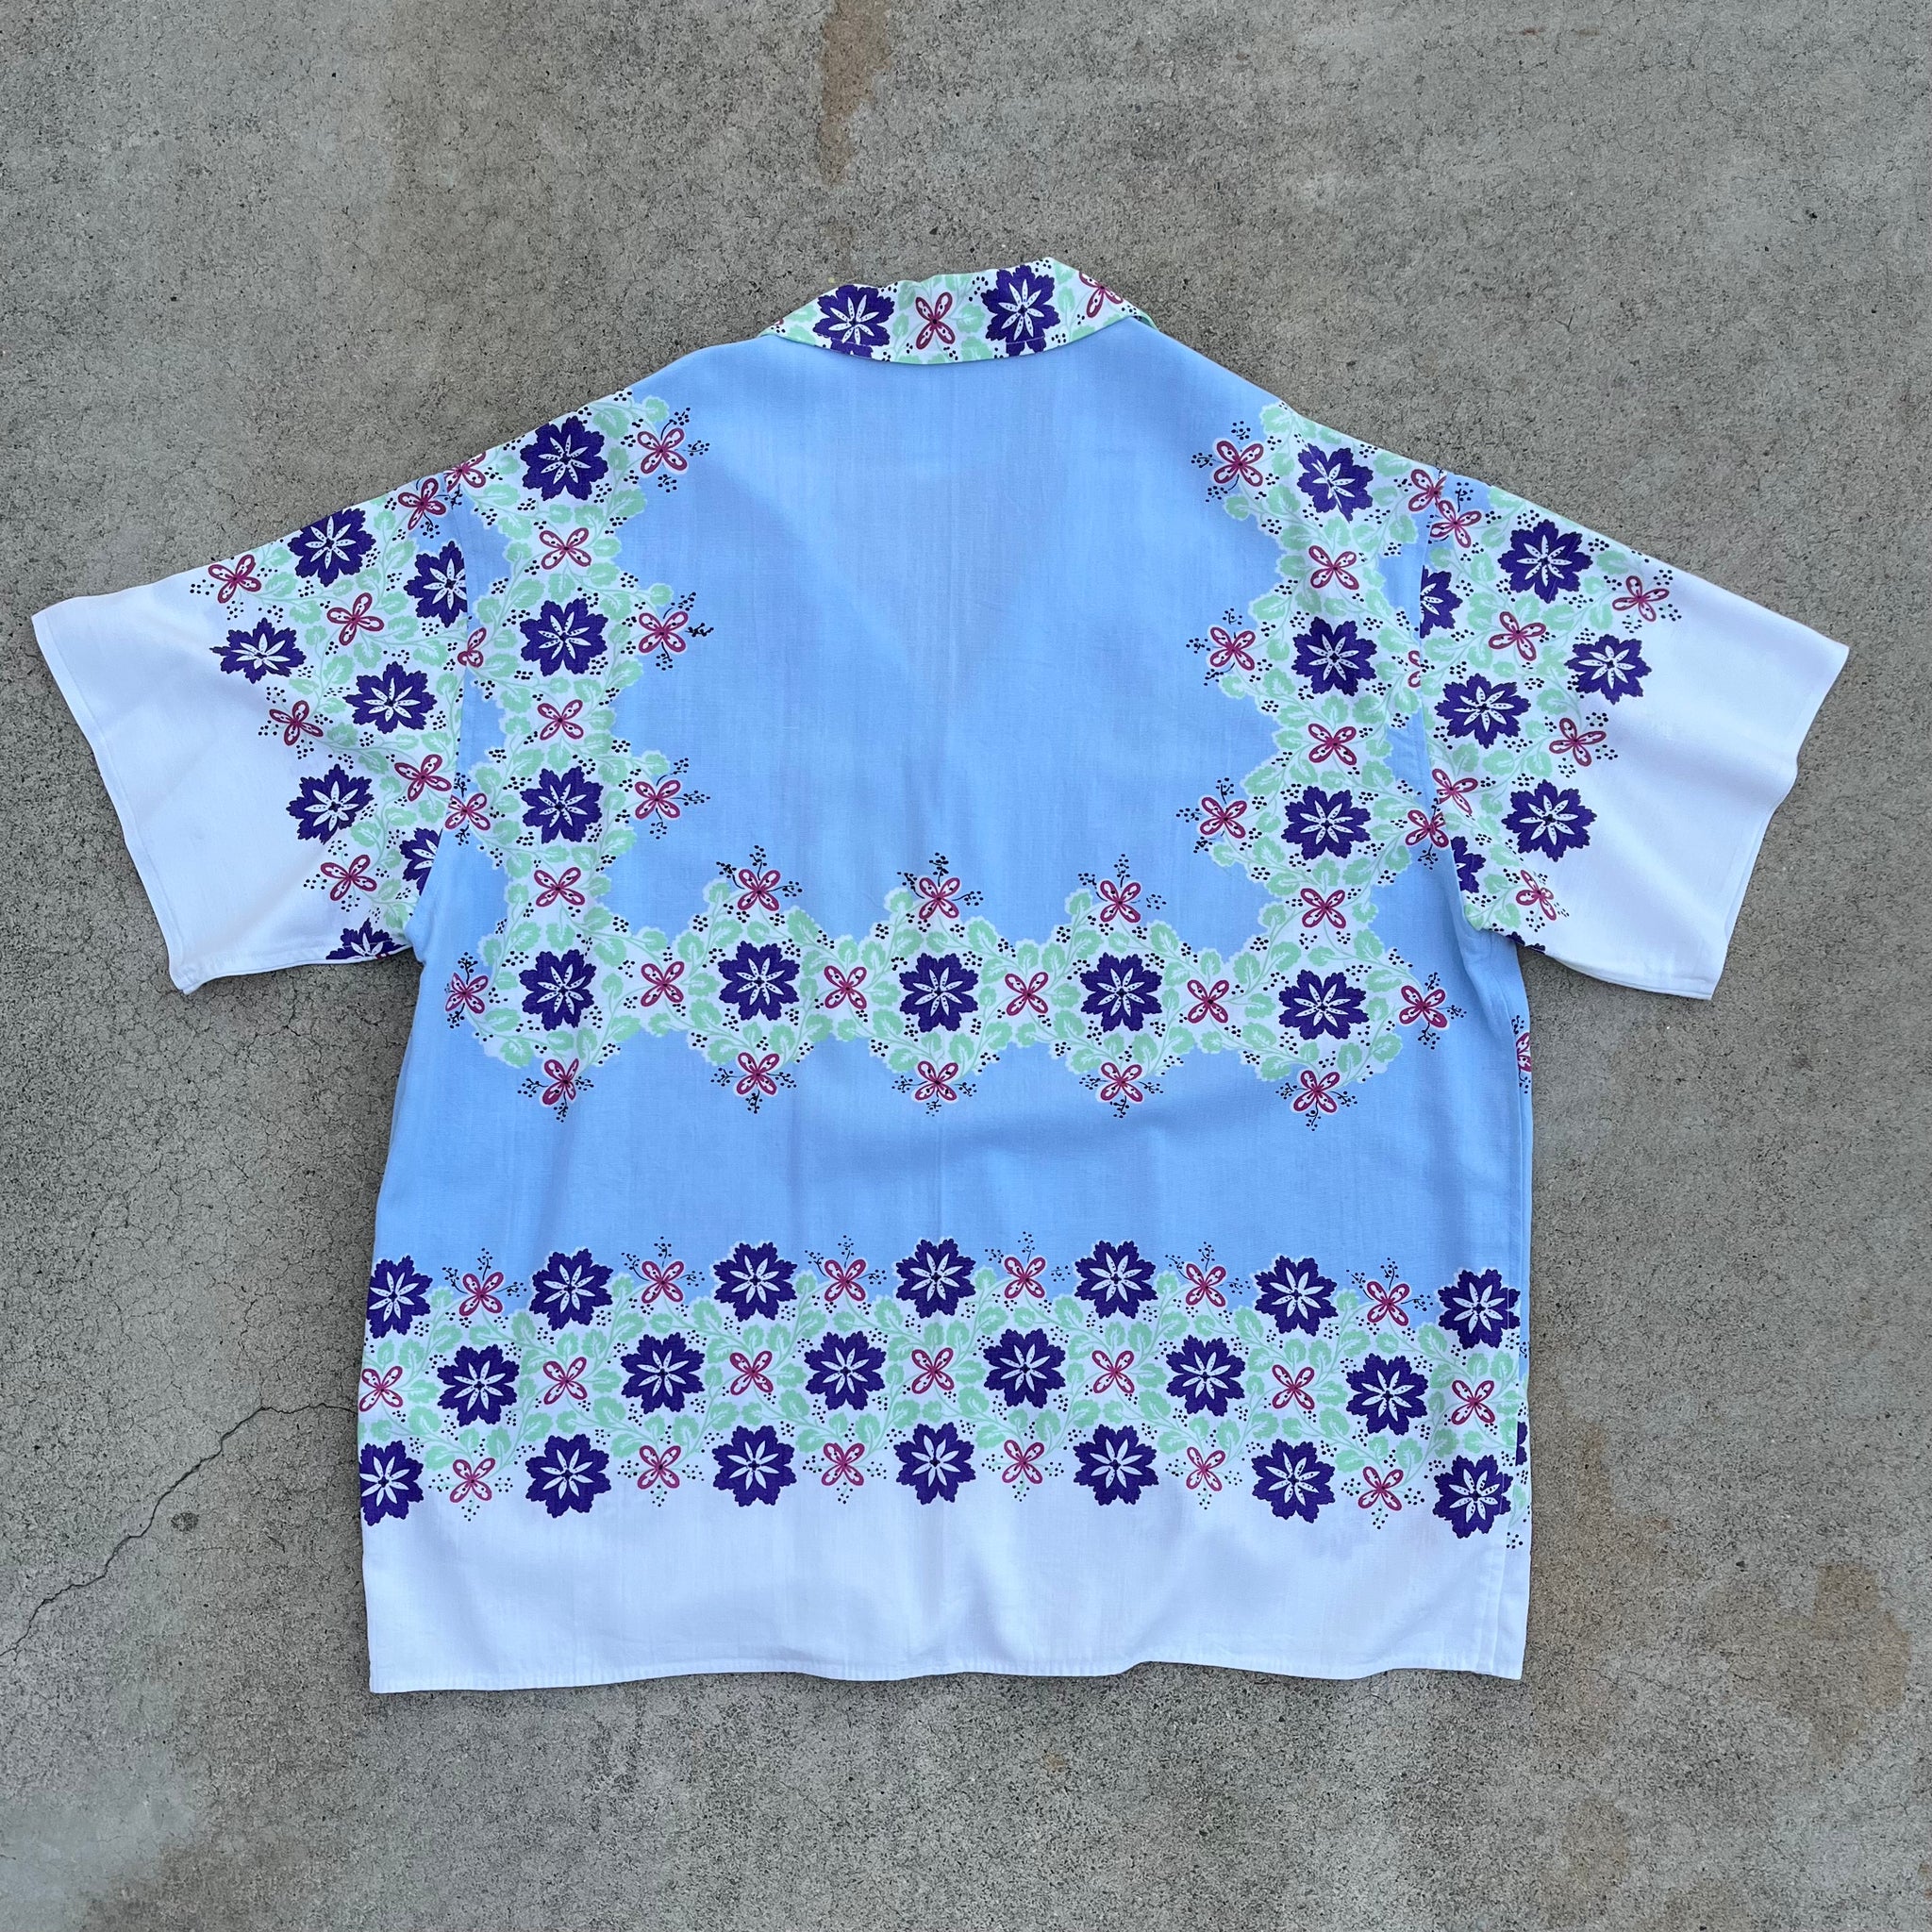 L/XL Tablecloth Shirt - Retro Floral